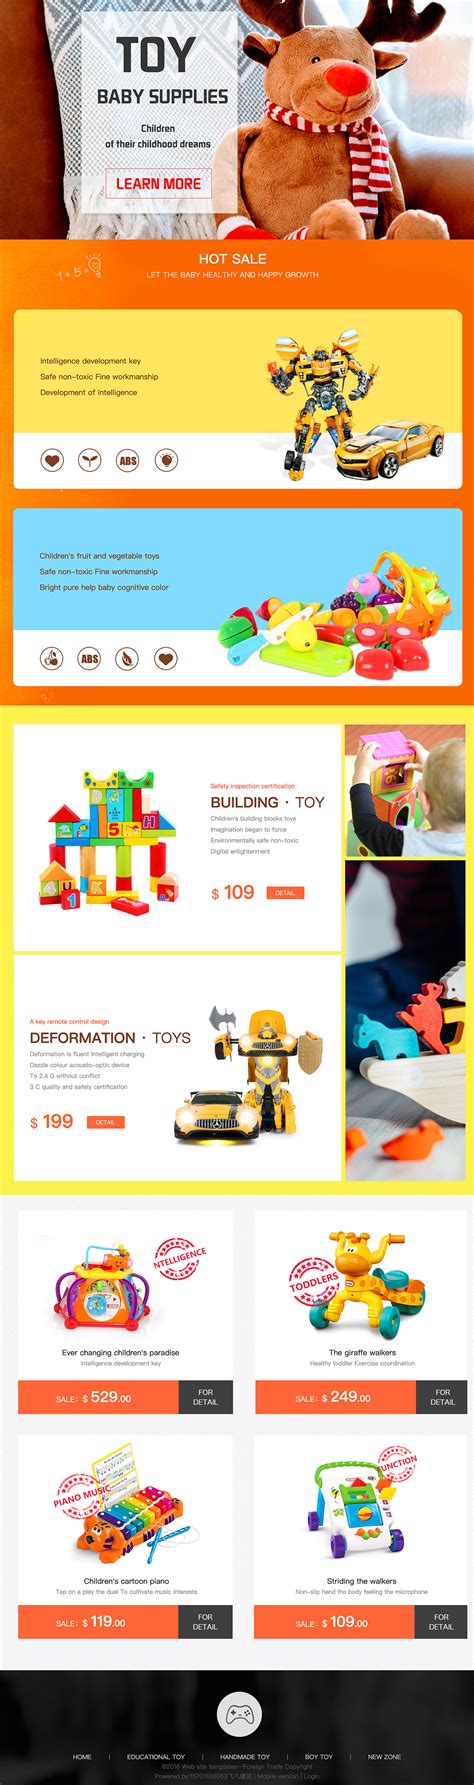 2021年玩具行业发展研究报告 - 21经济网